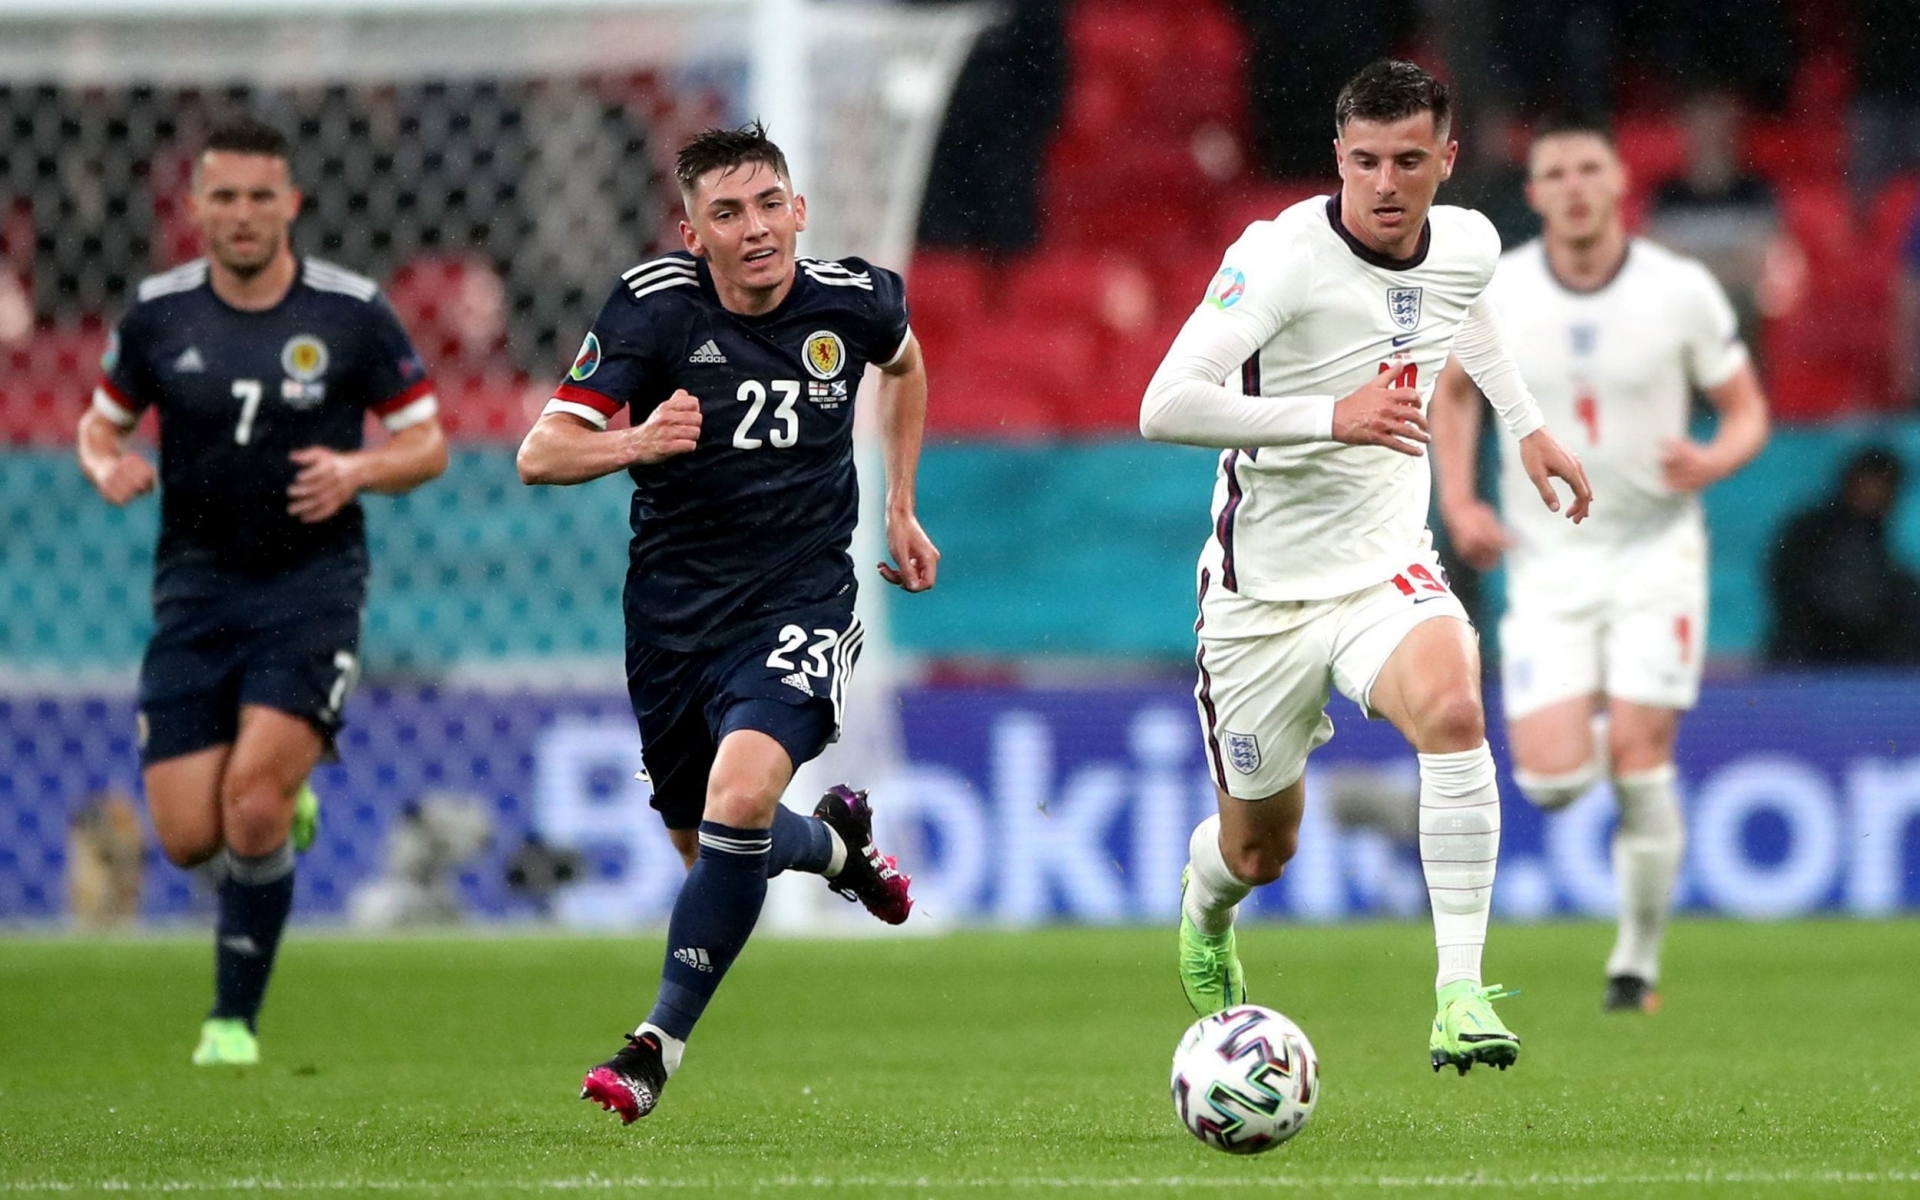 Kết quả EURO 2020: Anh 1-0 Czech, Harry Kane tiếp tục tàng hình - Ảnh 3